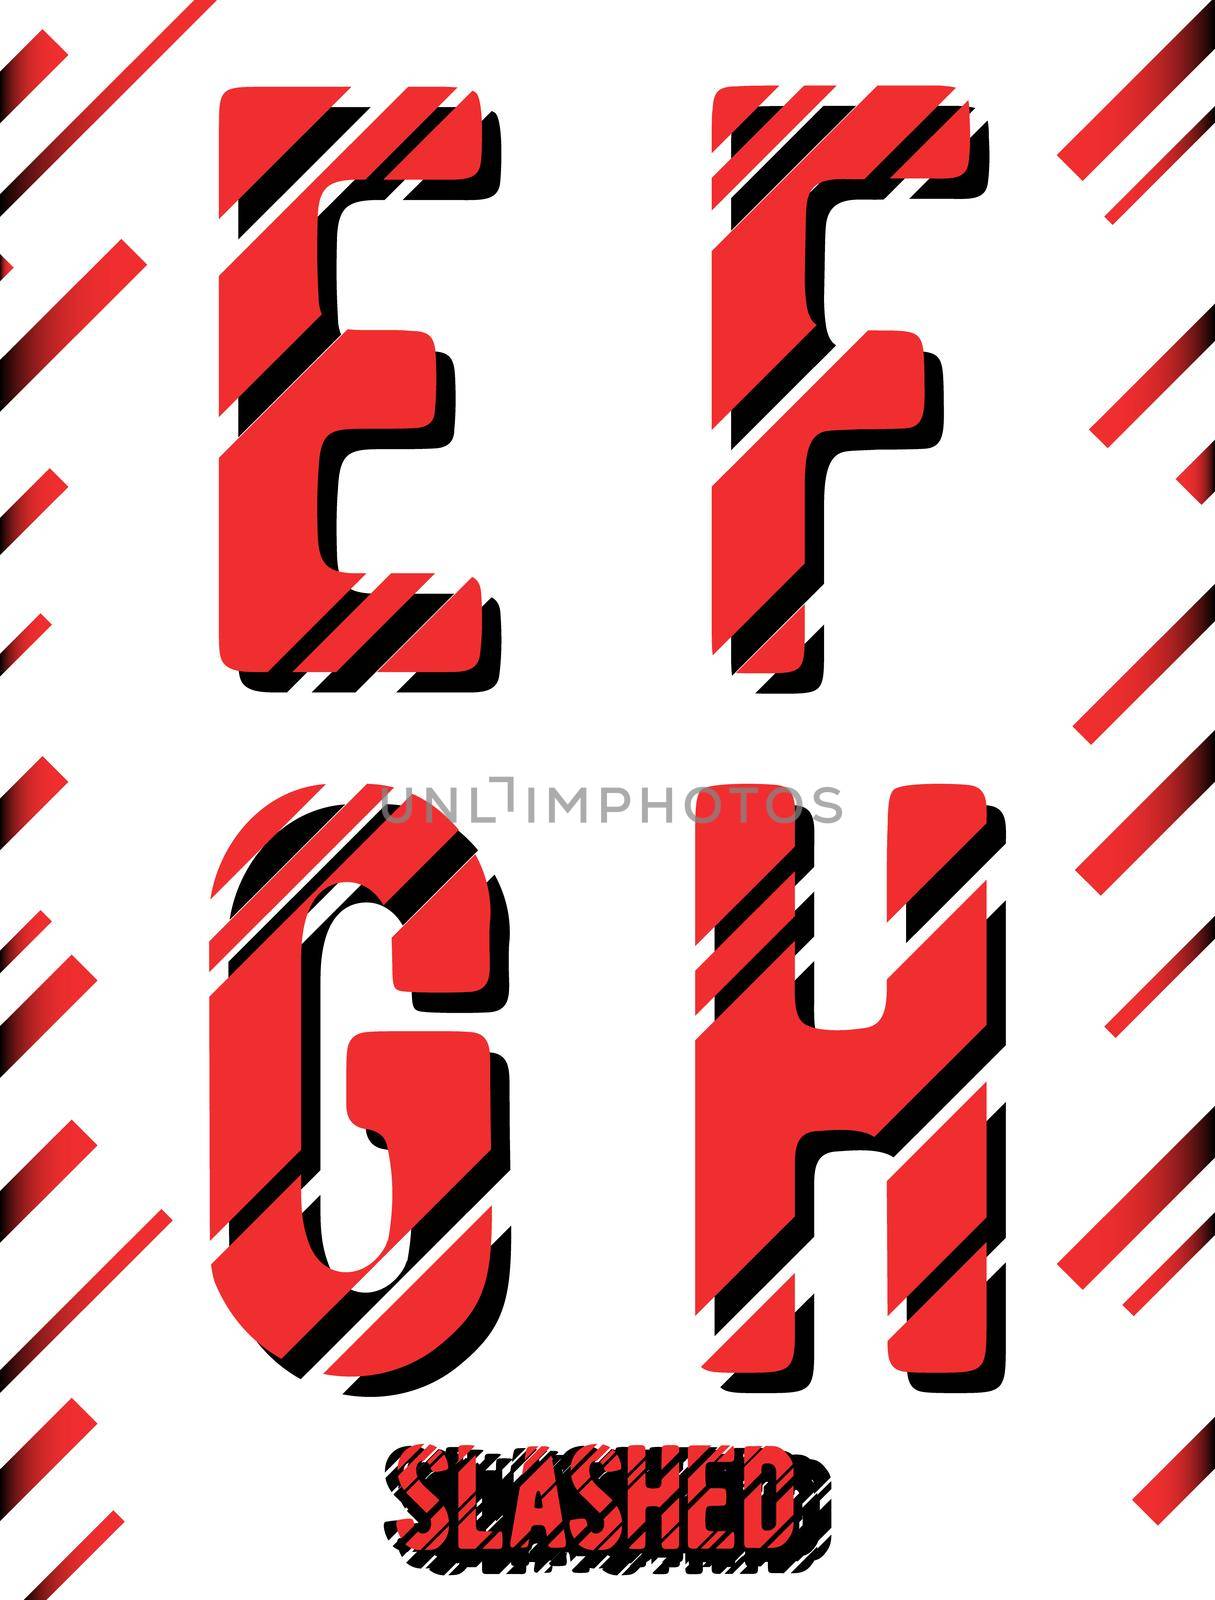 Alphabet font template. Set of letters E, F, G, H logo or icon. Slashed design. Vector illustration.